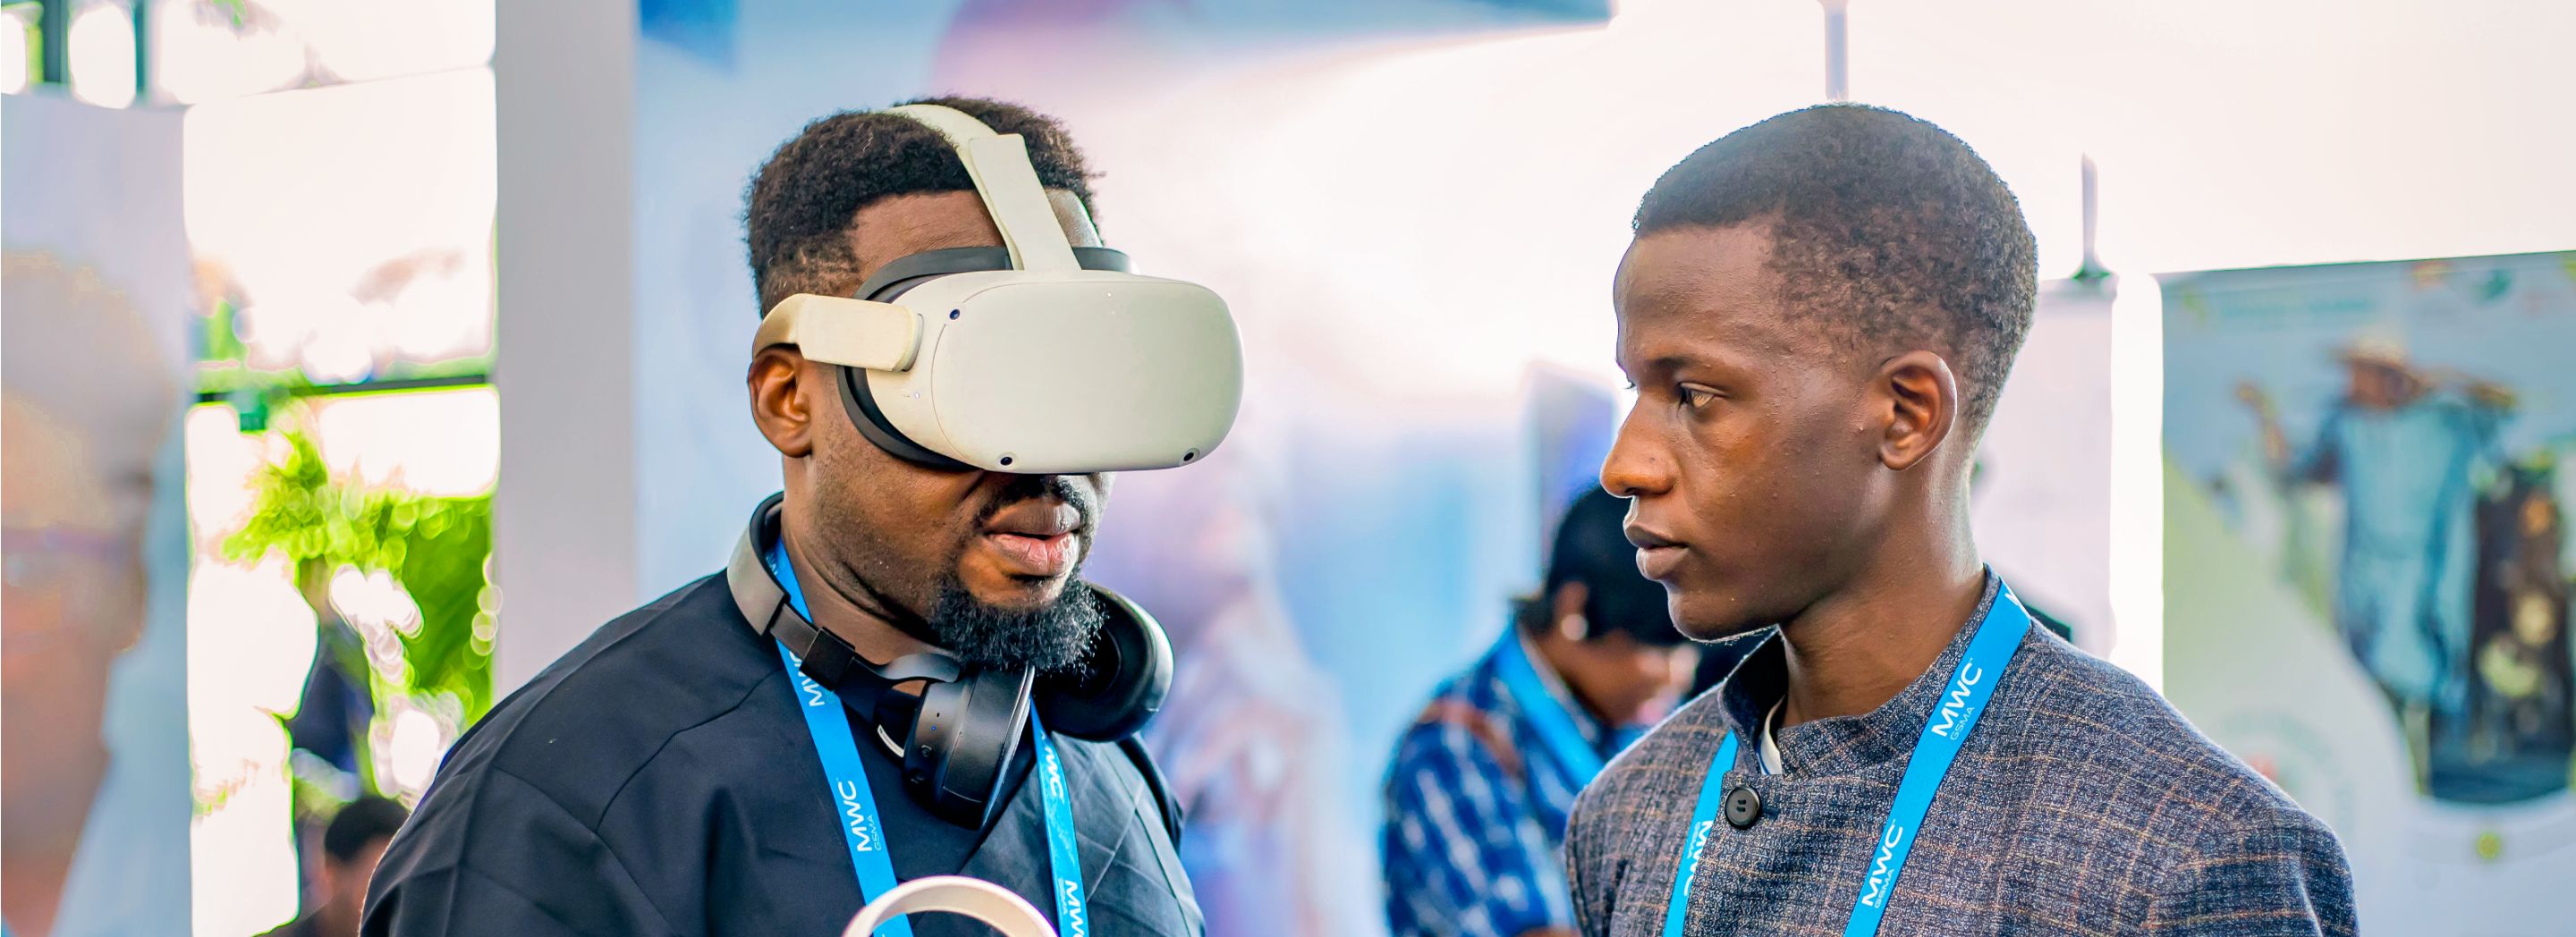 Foto: Zwei Männer stehen sich gegenüber. Der Mann links trägt eine VR-Brille.